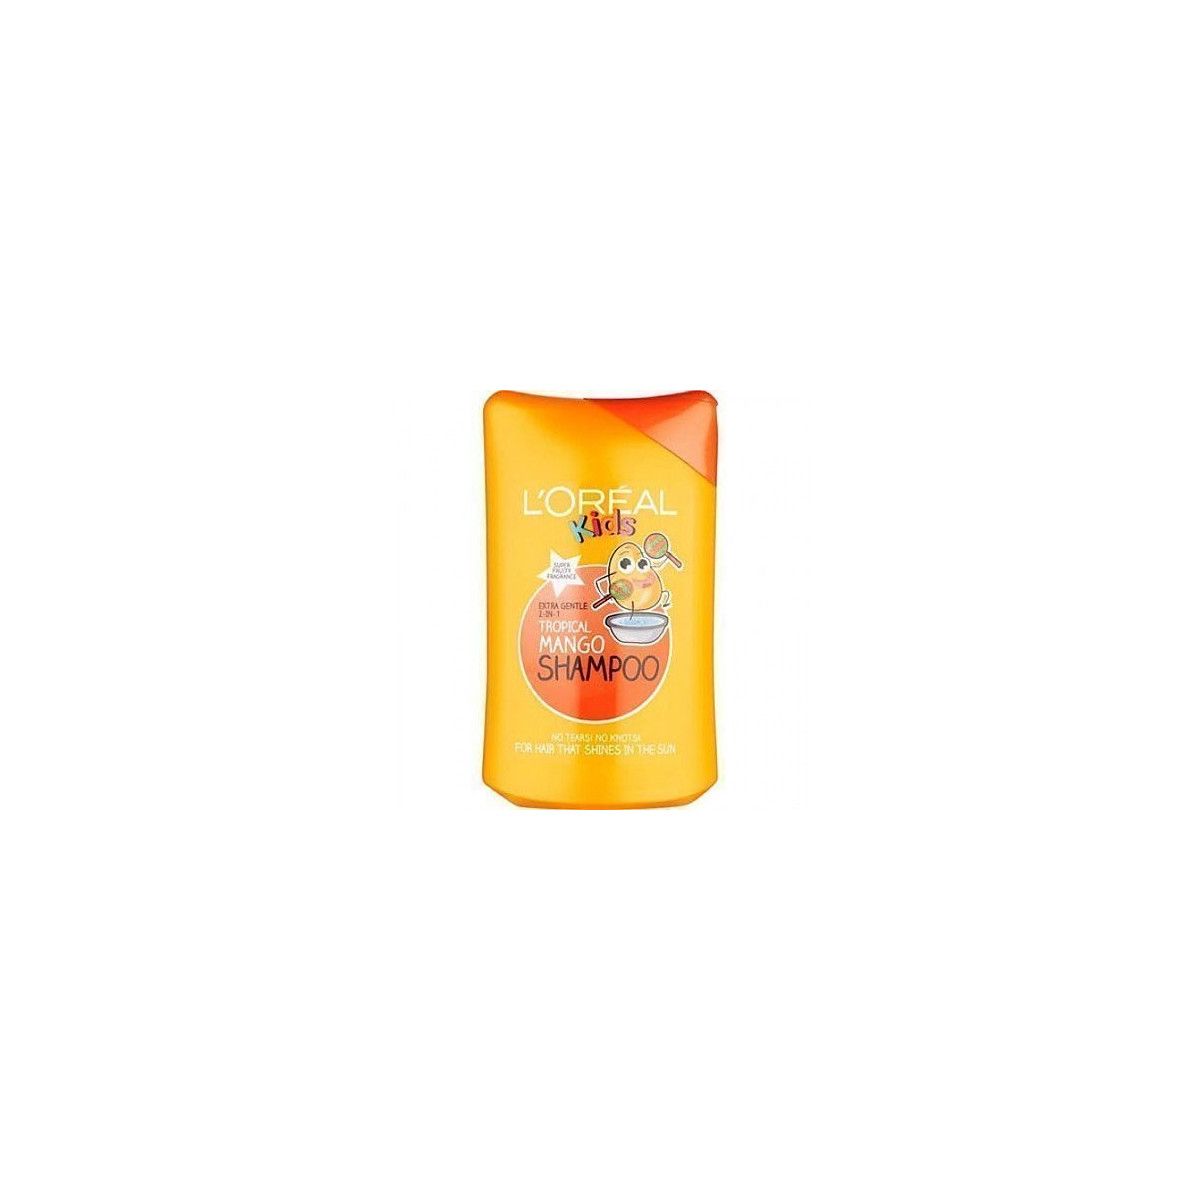 Loreal Kids Tropical Mango, szampon dla dzieci z owoców mango o przyjemnym zapachu 250ml